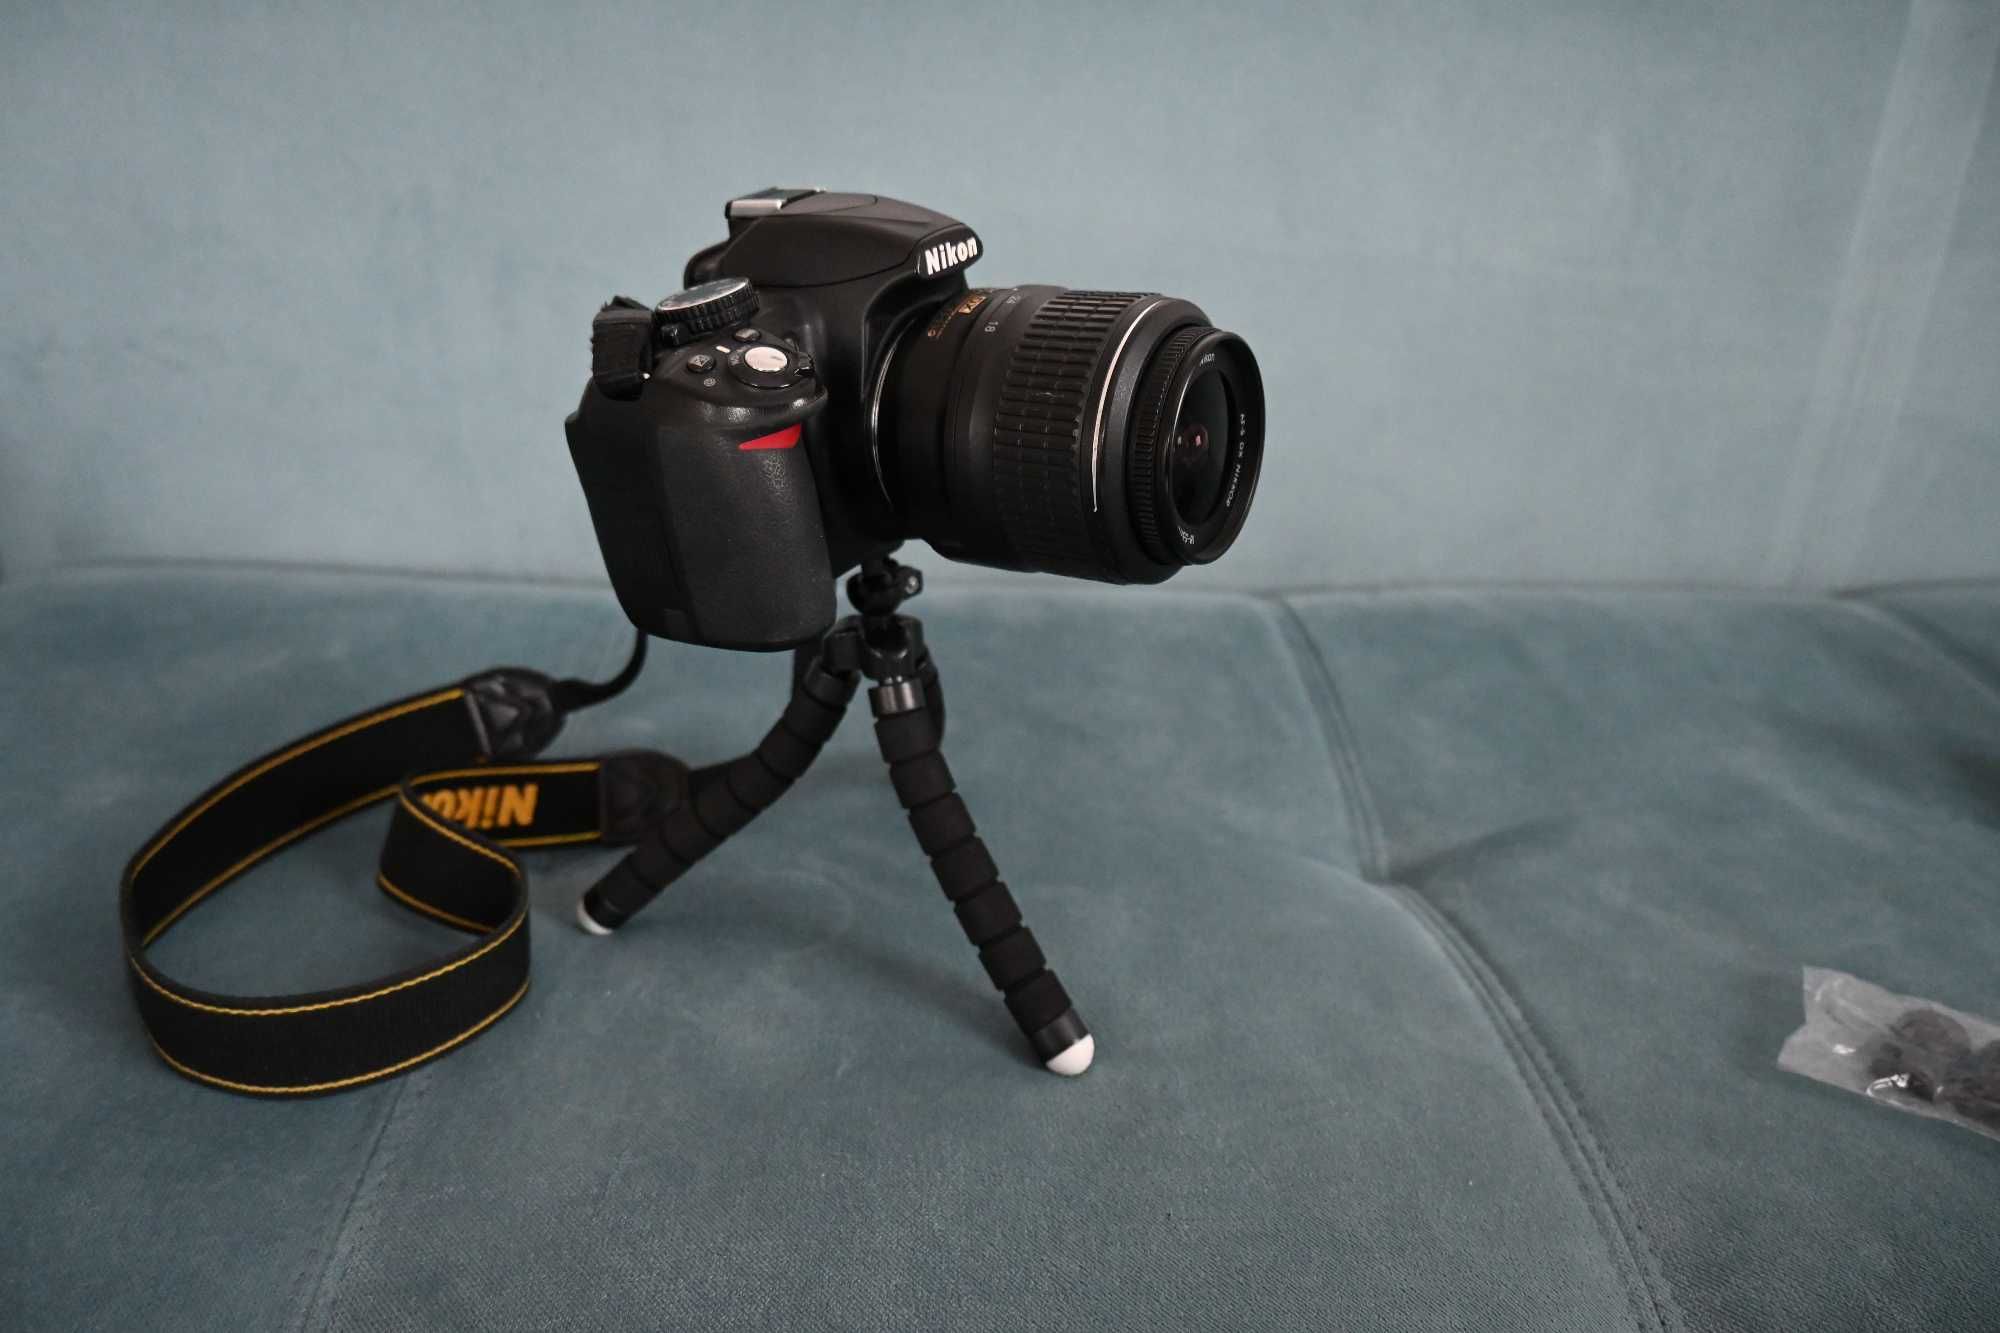 Aparat Nikon D3100 + AF-S Nikkor 18-55 mm VR + Tamron AF70-300 mm